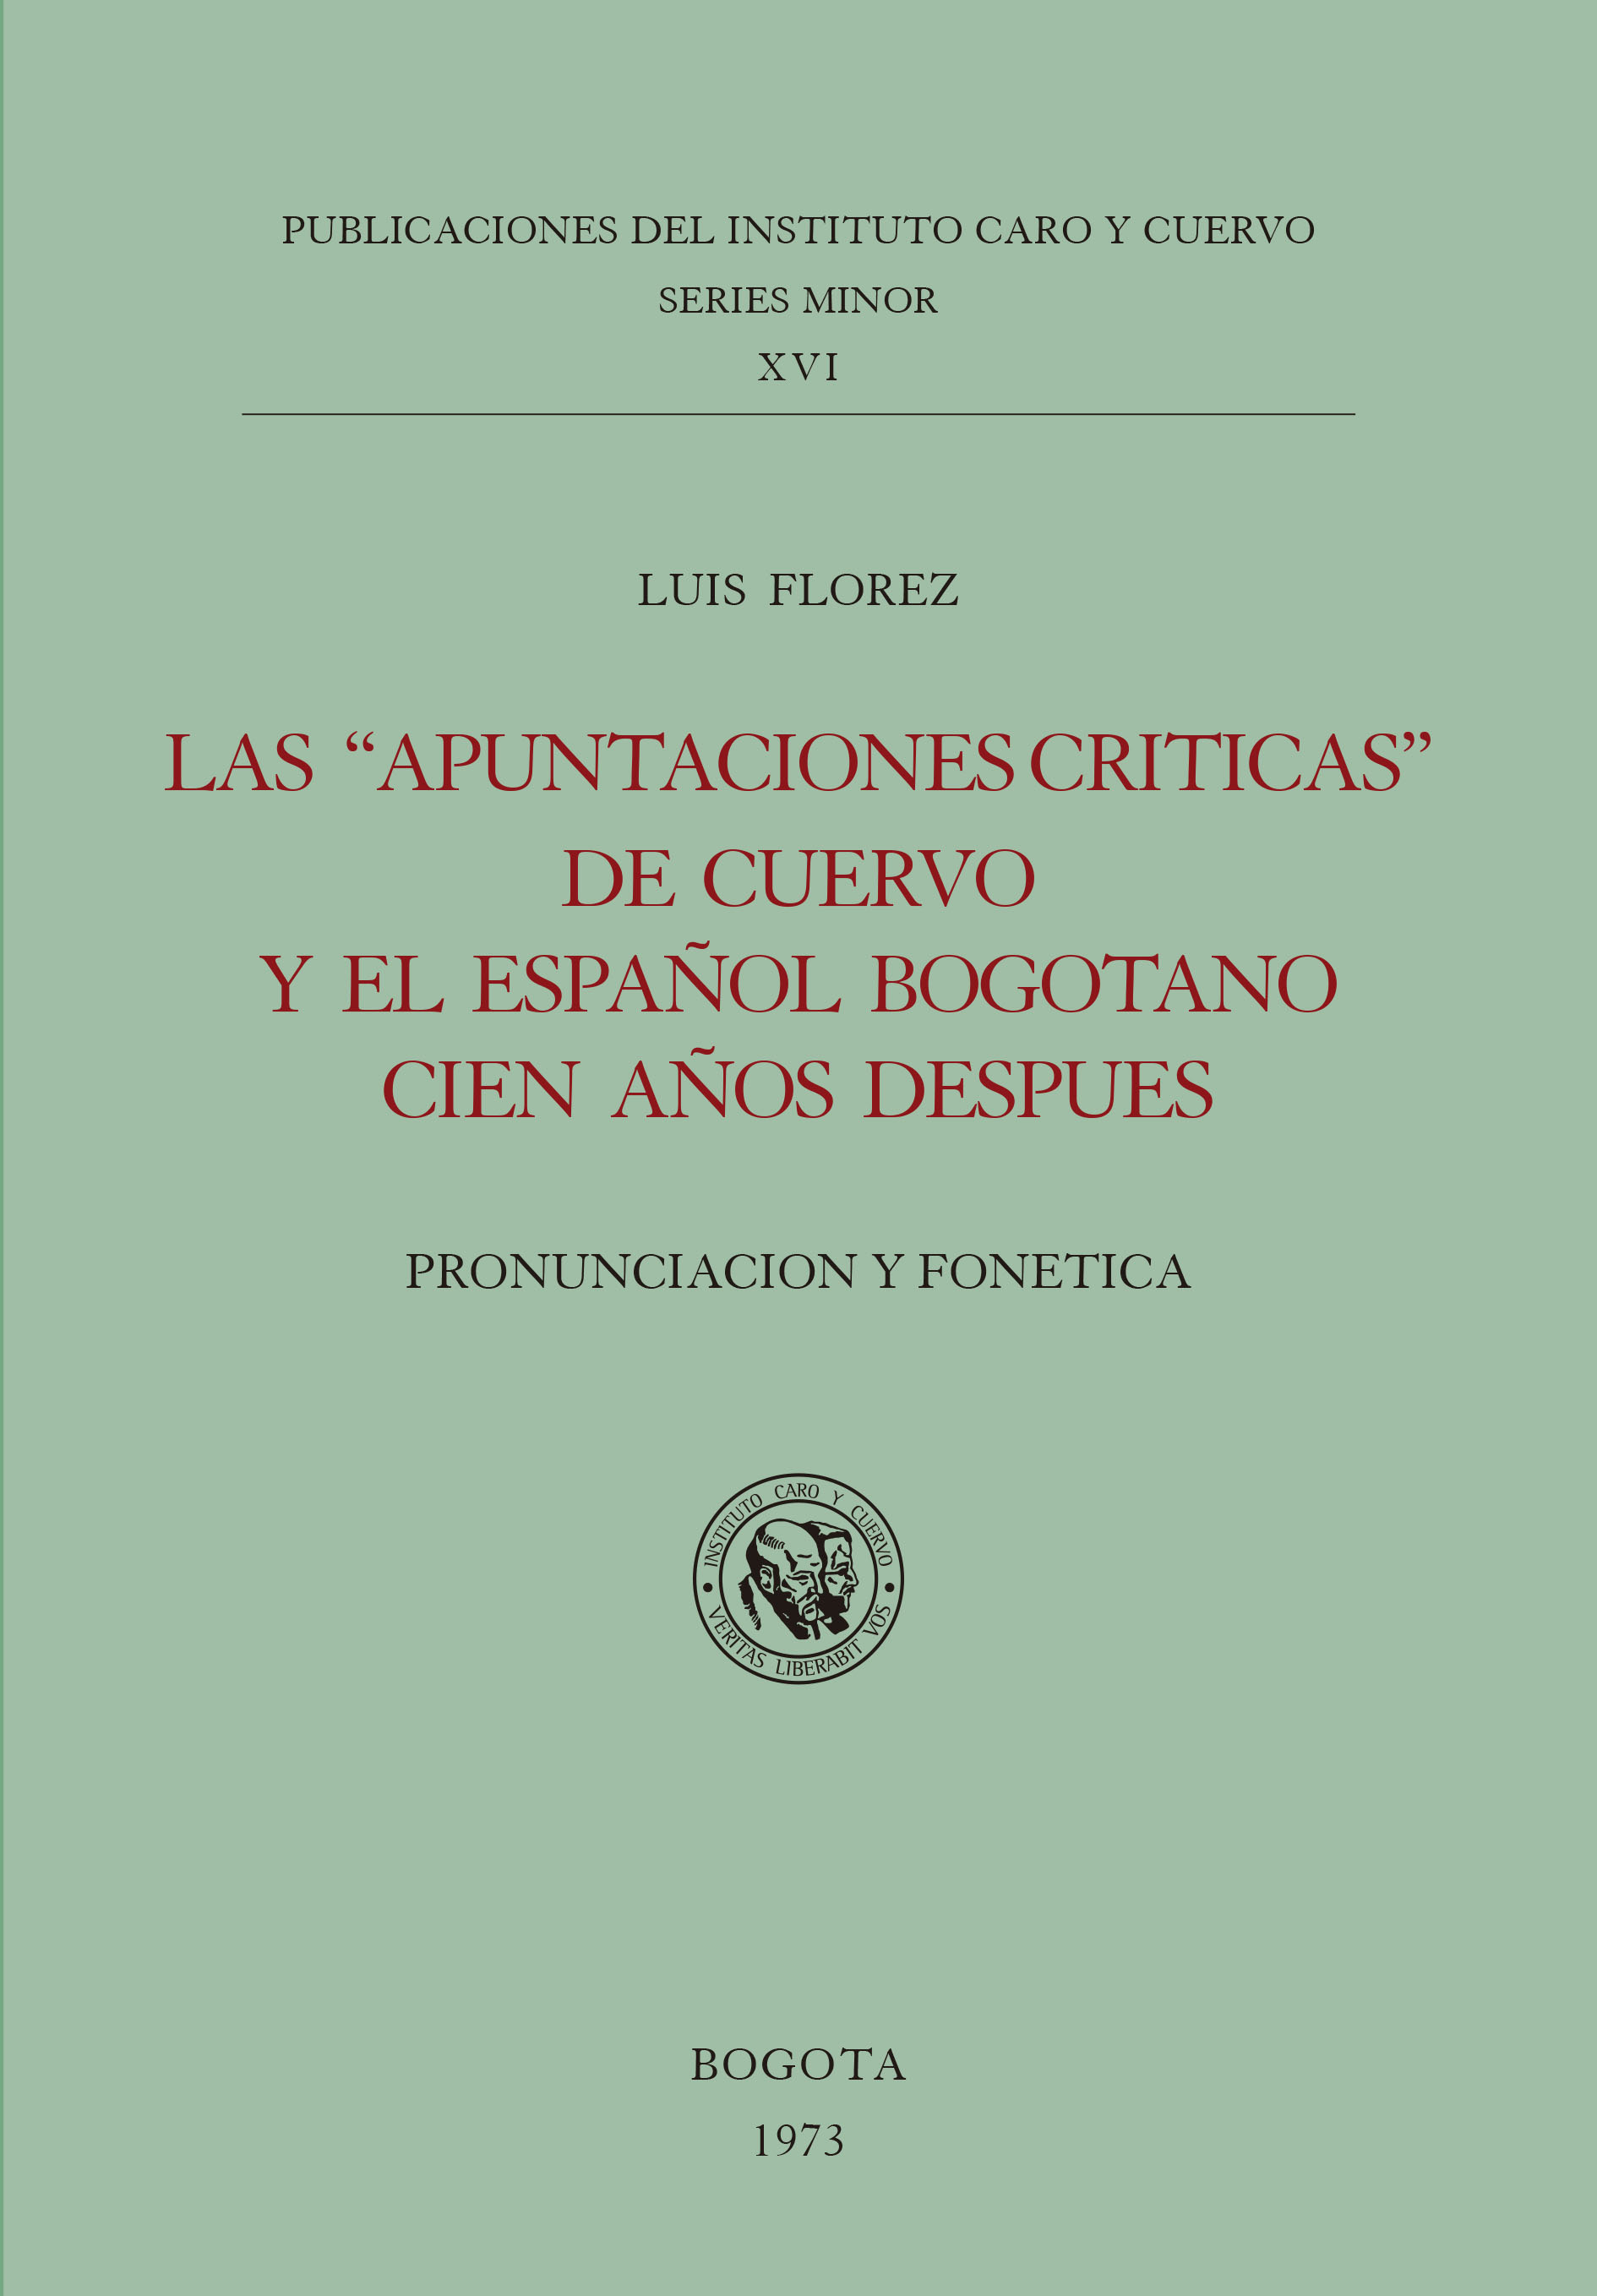 Las «Apuntaciones críticas» de Cuervo y el español bogotano cien años después. Pronunciación y fonética